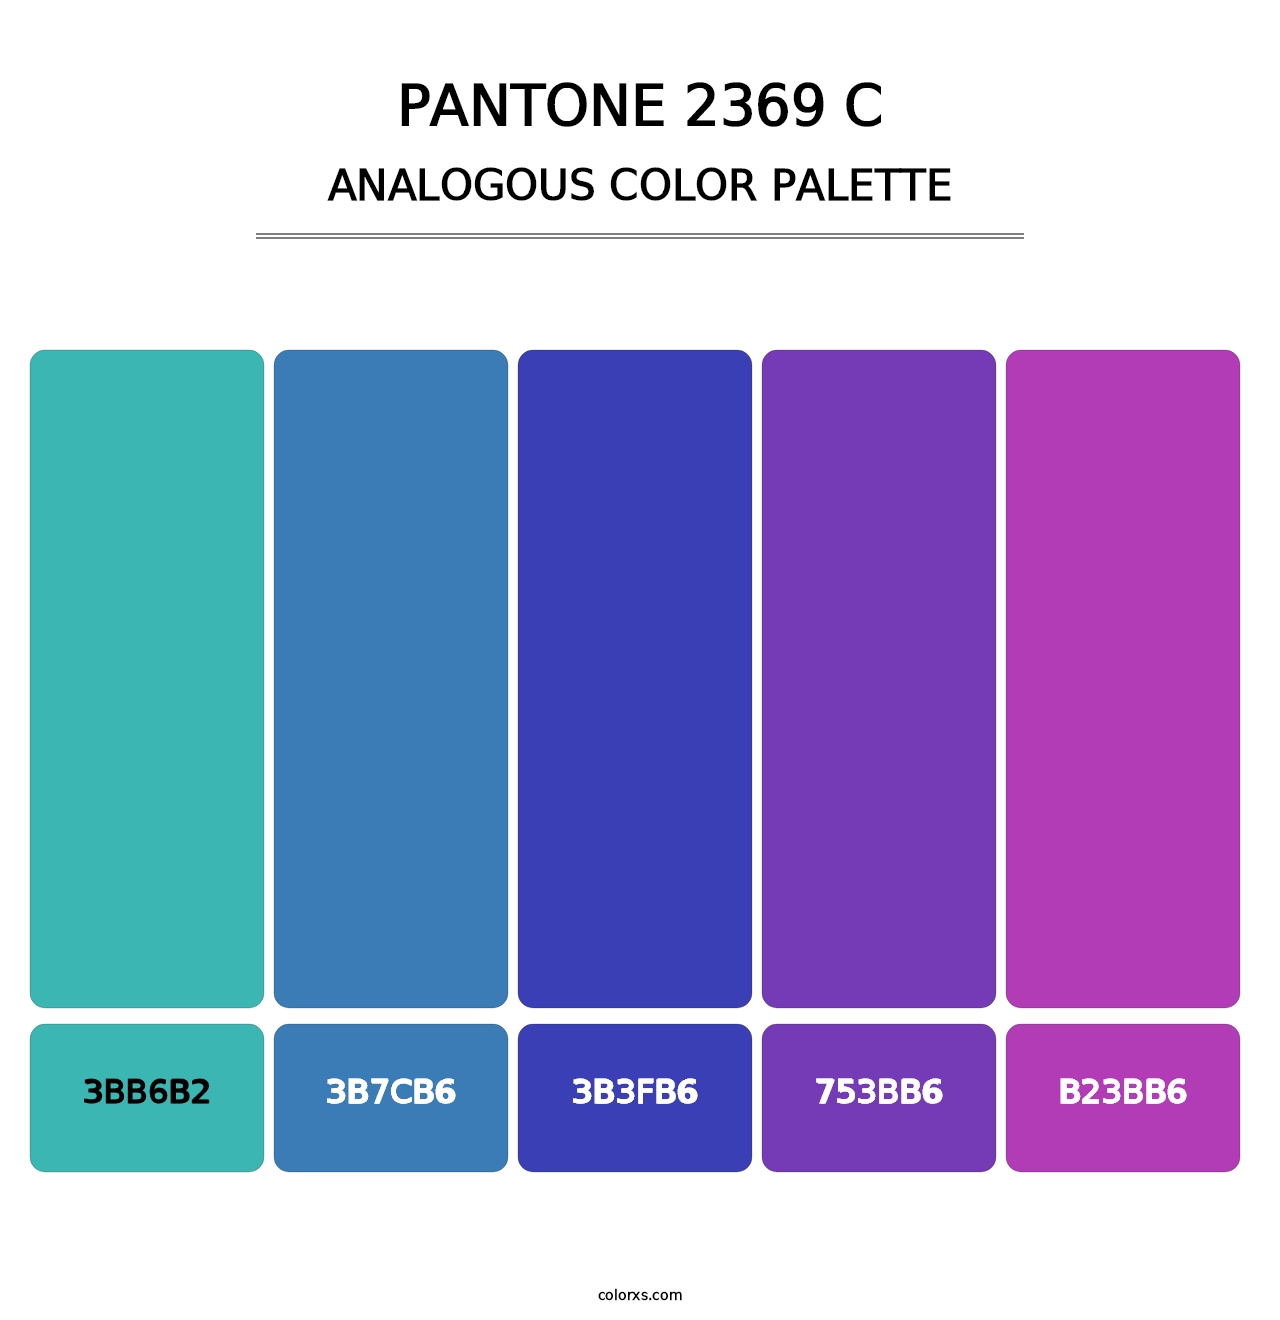 PANTONE 2369 C - Analogous Color Palette